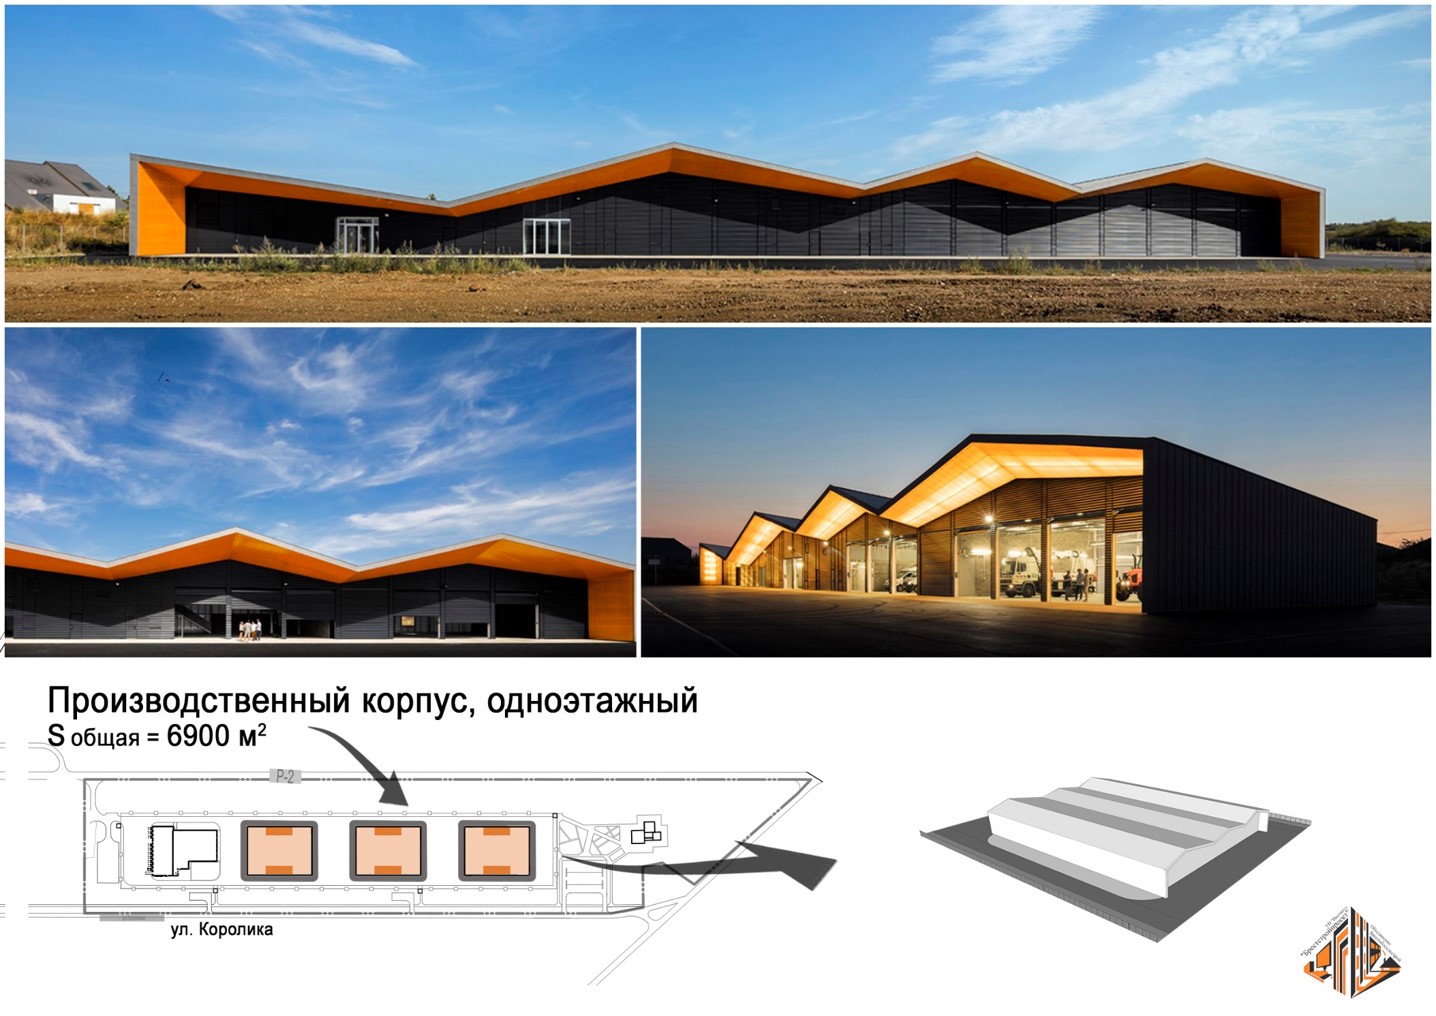 Создание индустриального парка "Бурштын" в городе Барановичи. Приглашаем инвесторов и резидентов.